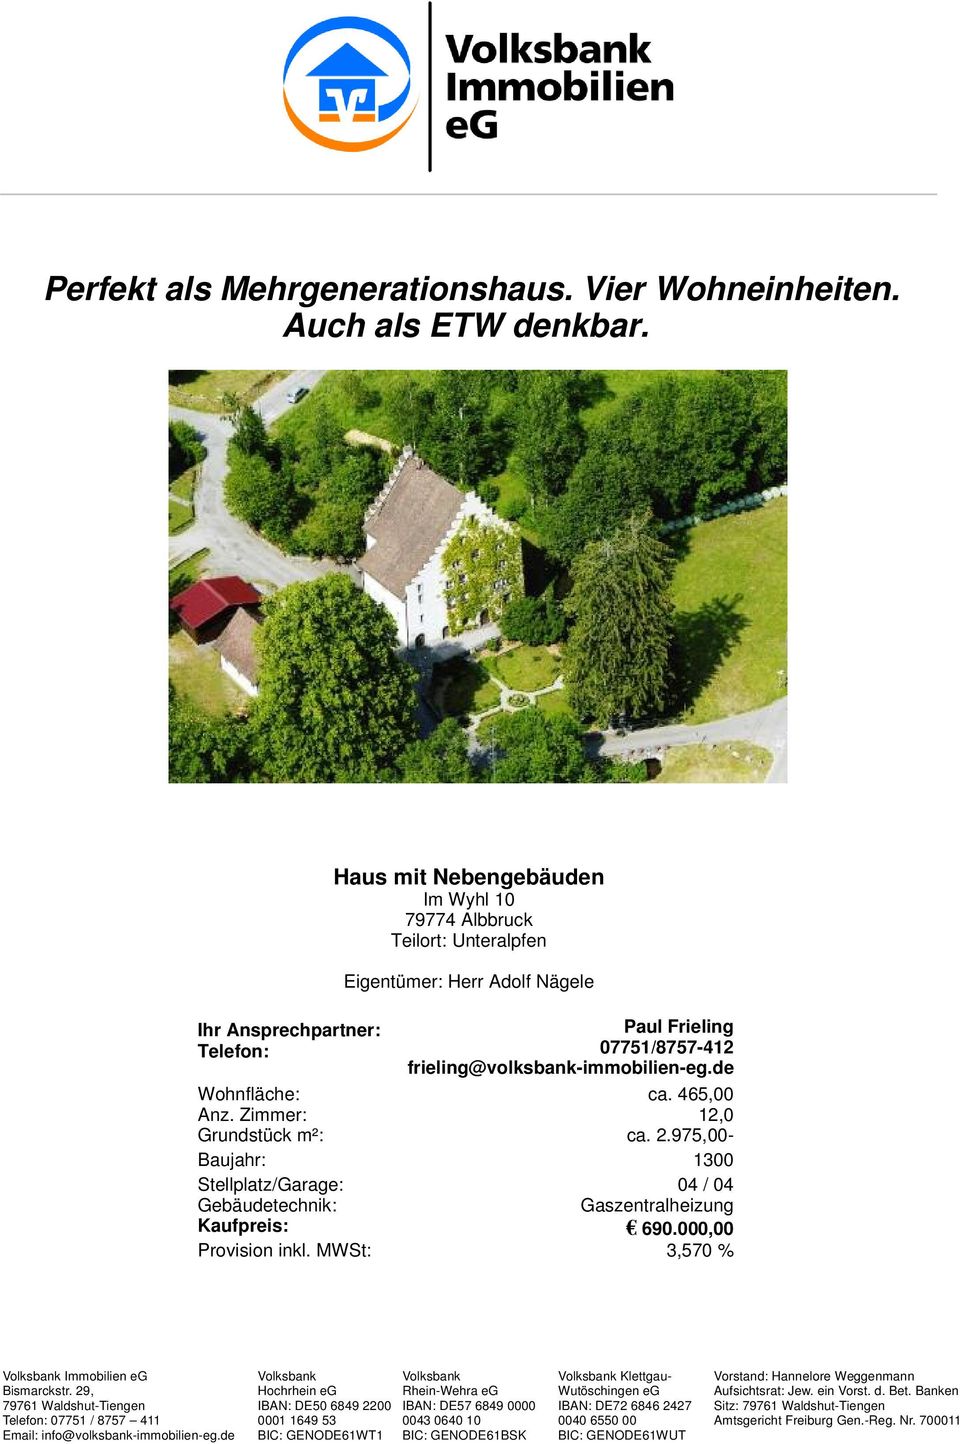 Nägele Paul Frieling 07751/8757-412 frieling@volksbank-immobilien-eg.de ca. 465,00 12,0 Wohnfläche: Anz.